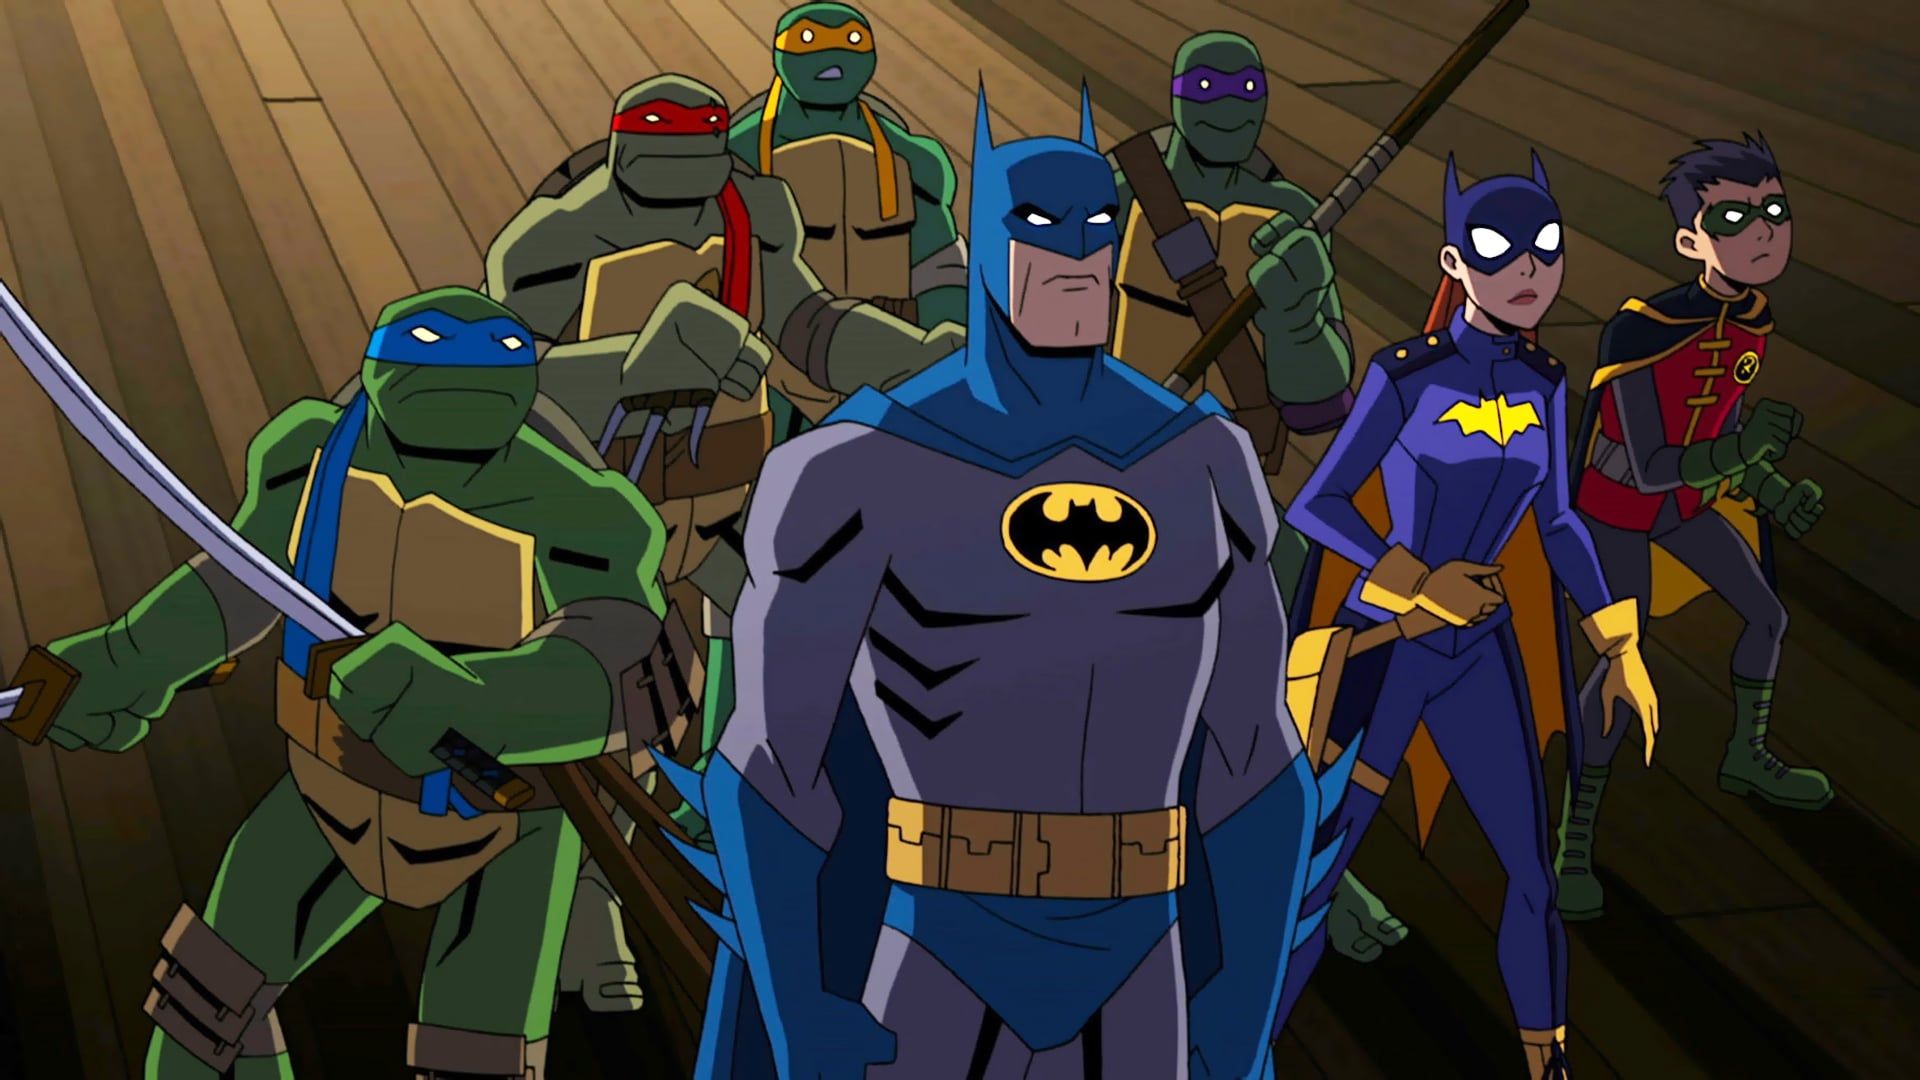 Batman vs Teenage Mutant Ninja Turtles background